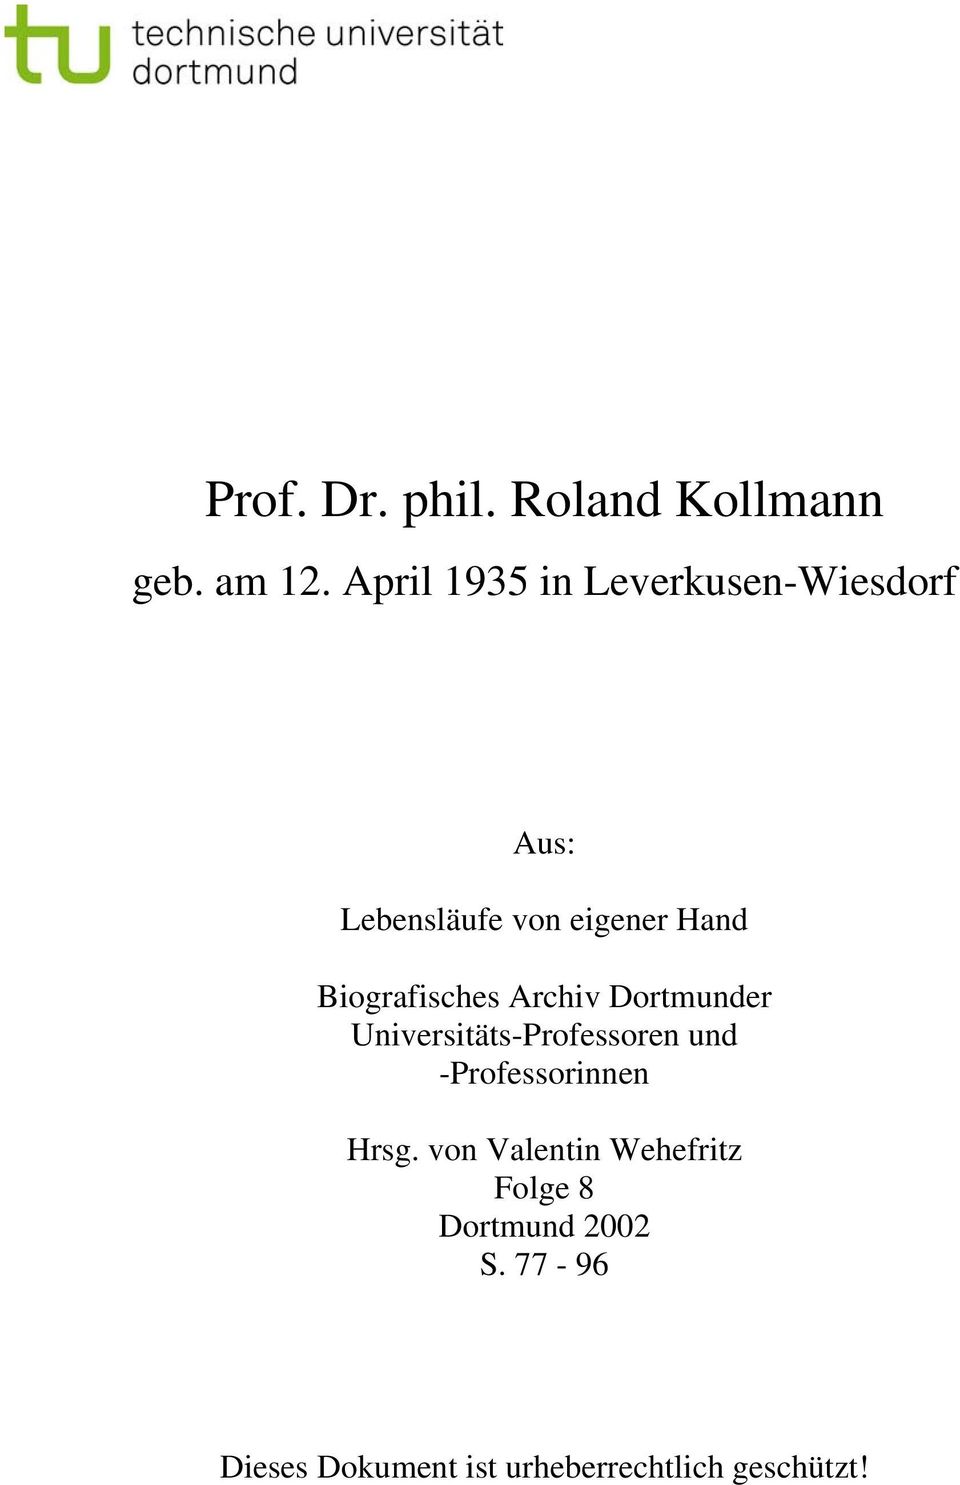 Biografisches Archiv Dortmunder Universitäts-Professoren und